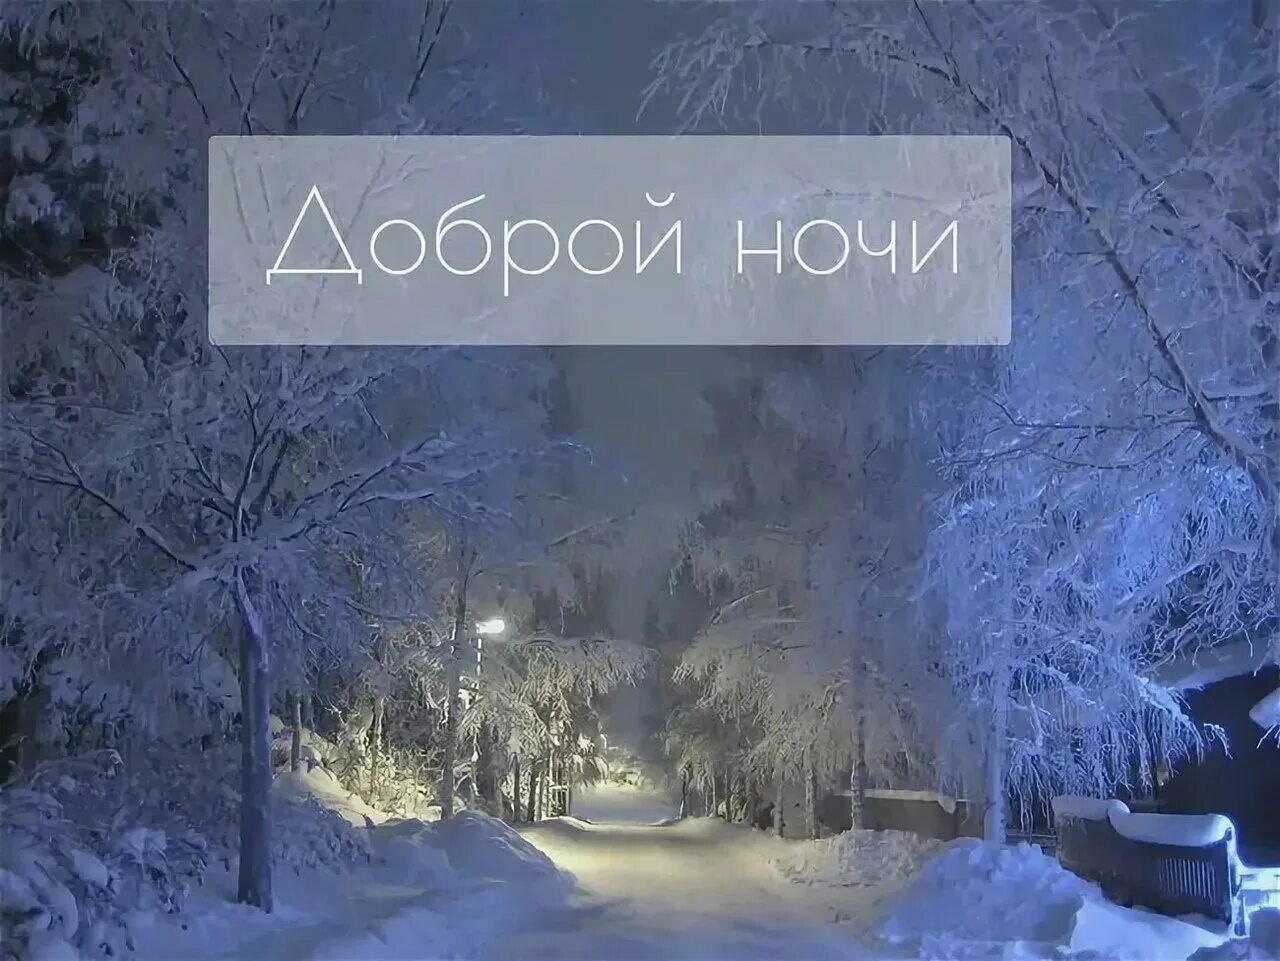 Спокойной ночи красивая зимняя ночь. Спокойной зимней ночи. Спокойной ночи зима. Спокойной ночи зимой. Доброй зимней ночи.